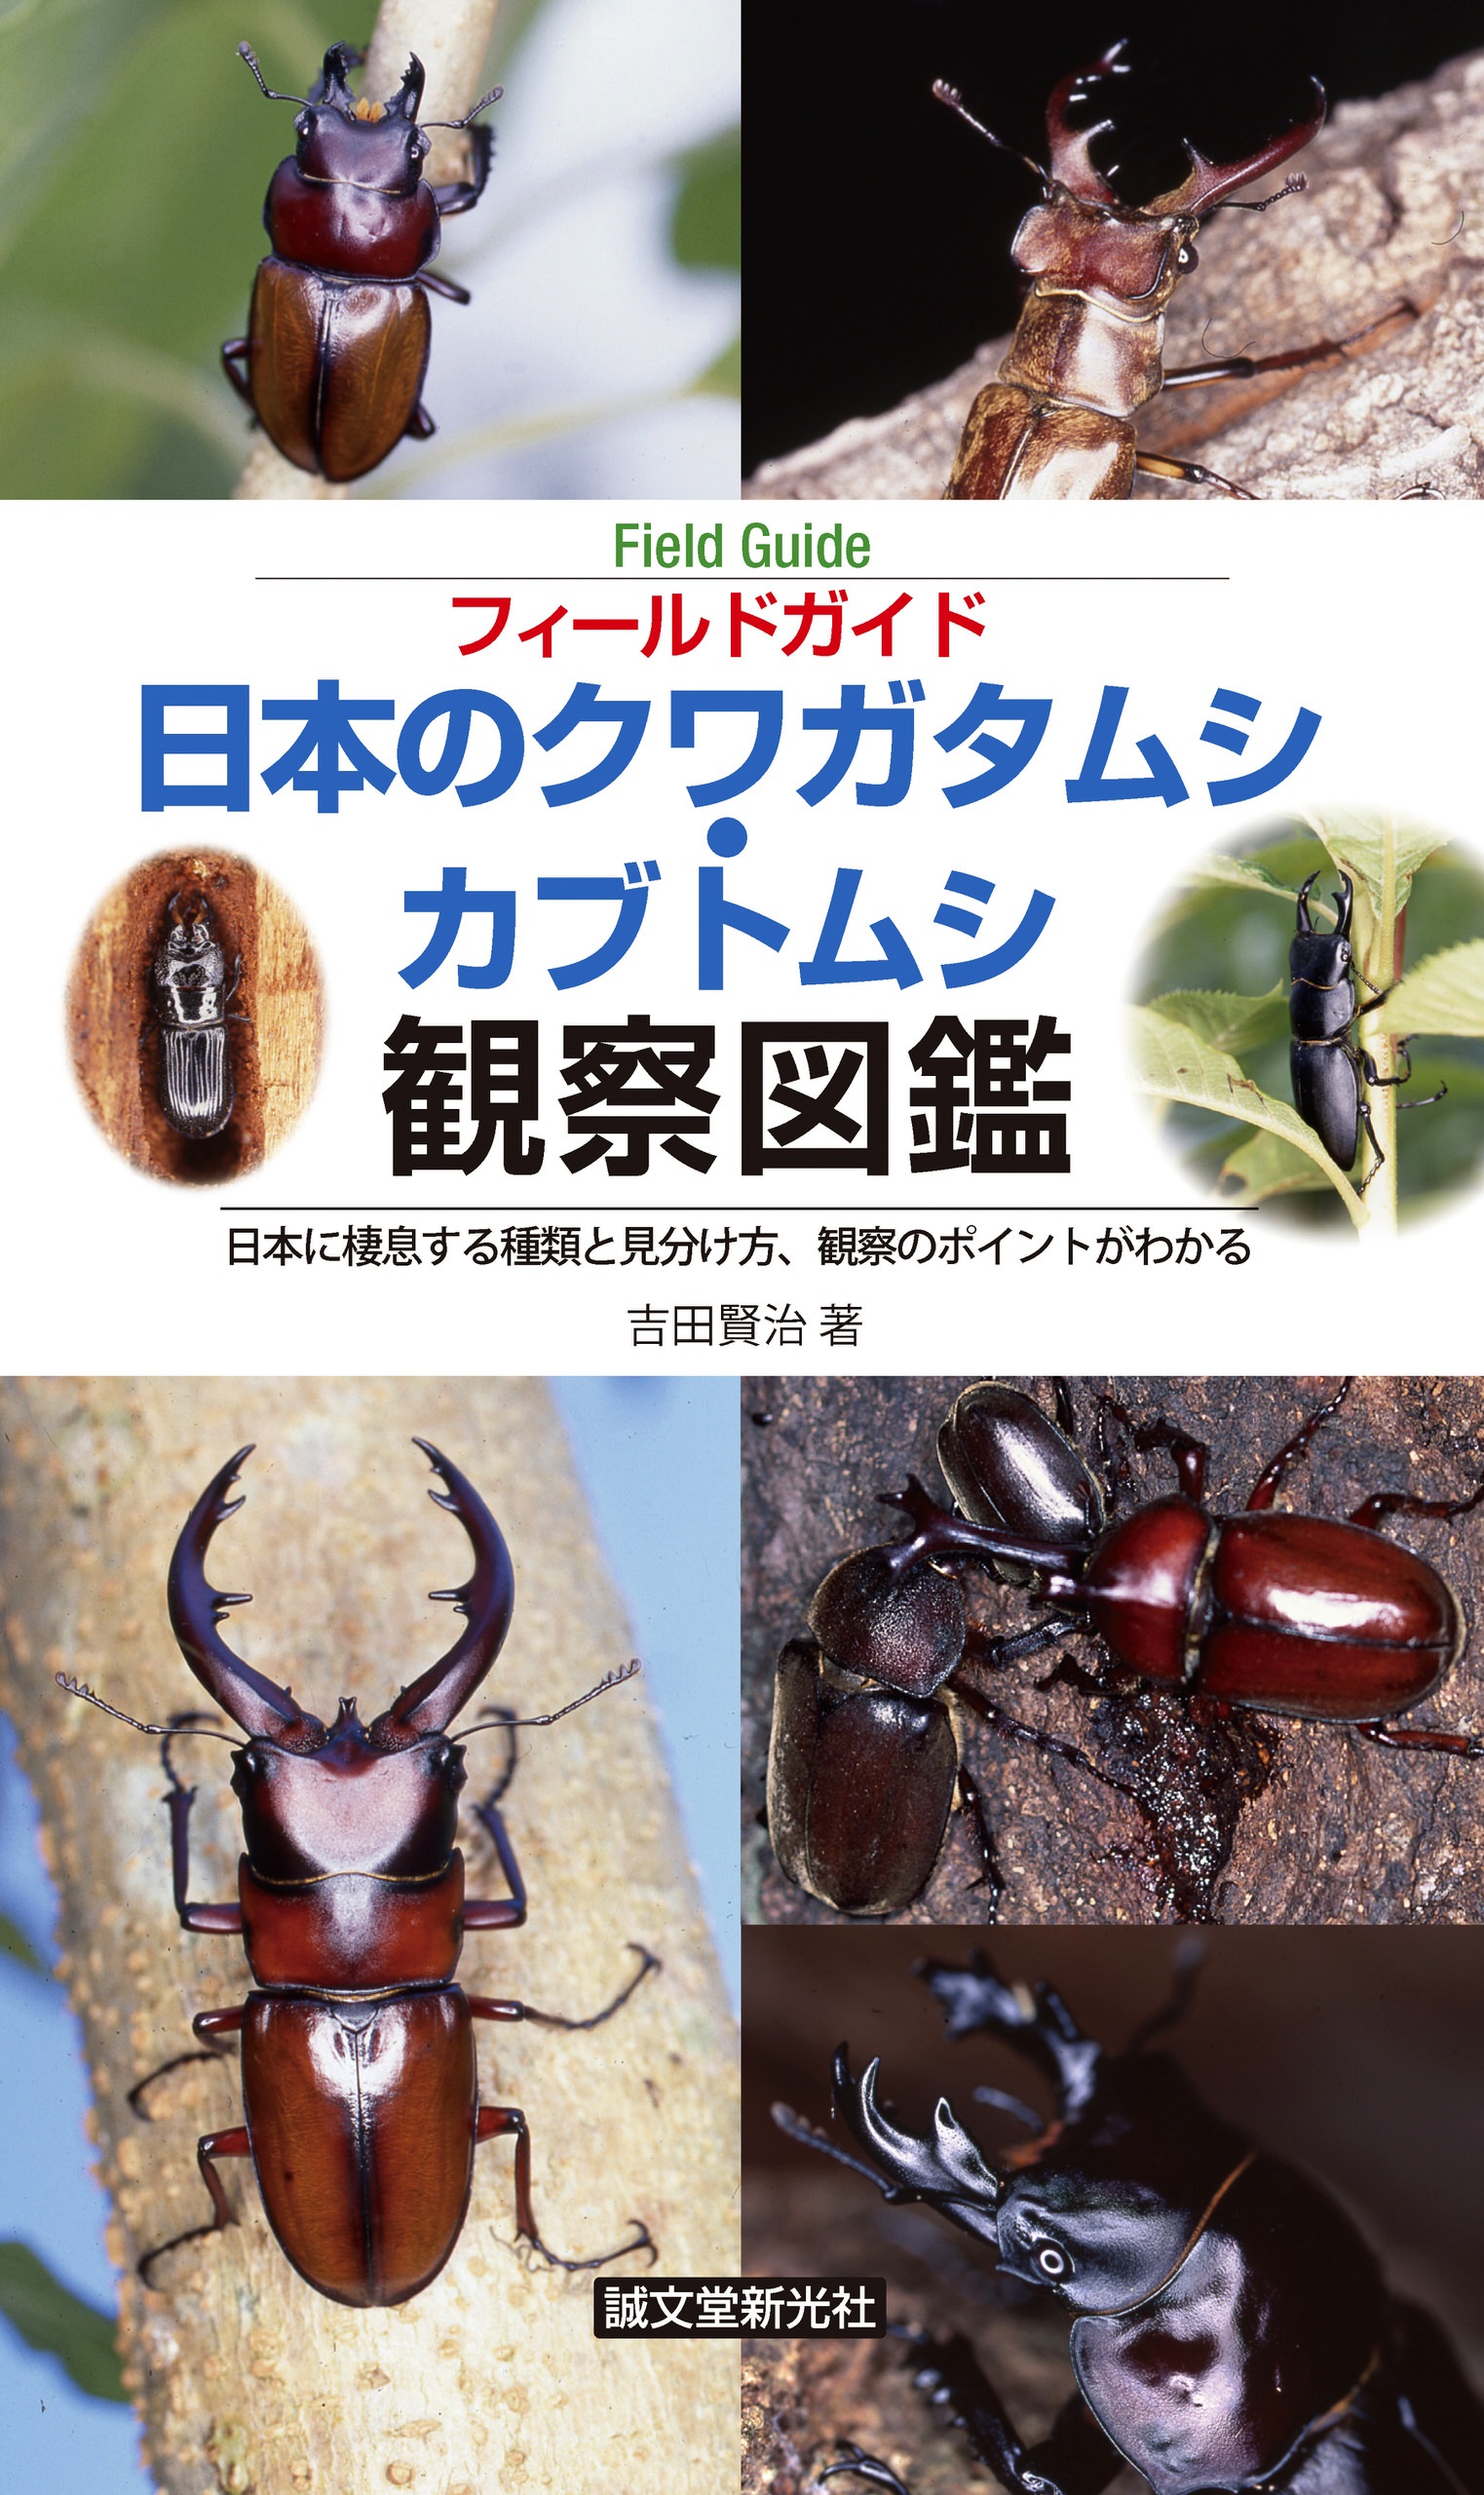 日本のクワガタムシ・カブトムシ観察図鑑：日本に棲息する種類と見分け方、観察のポイントがわかる 1巻(書籍) - 電子書籍 | U-NEXT  初回600円分無料